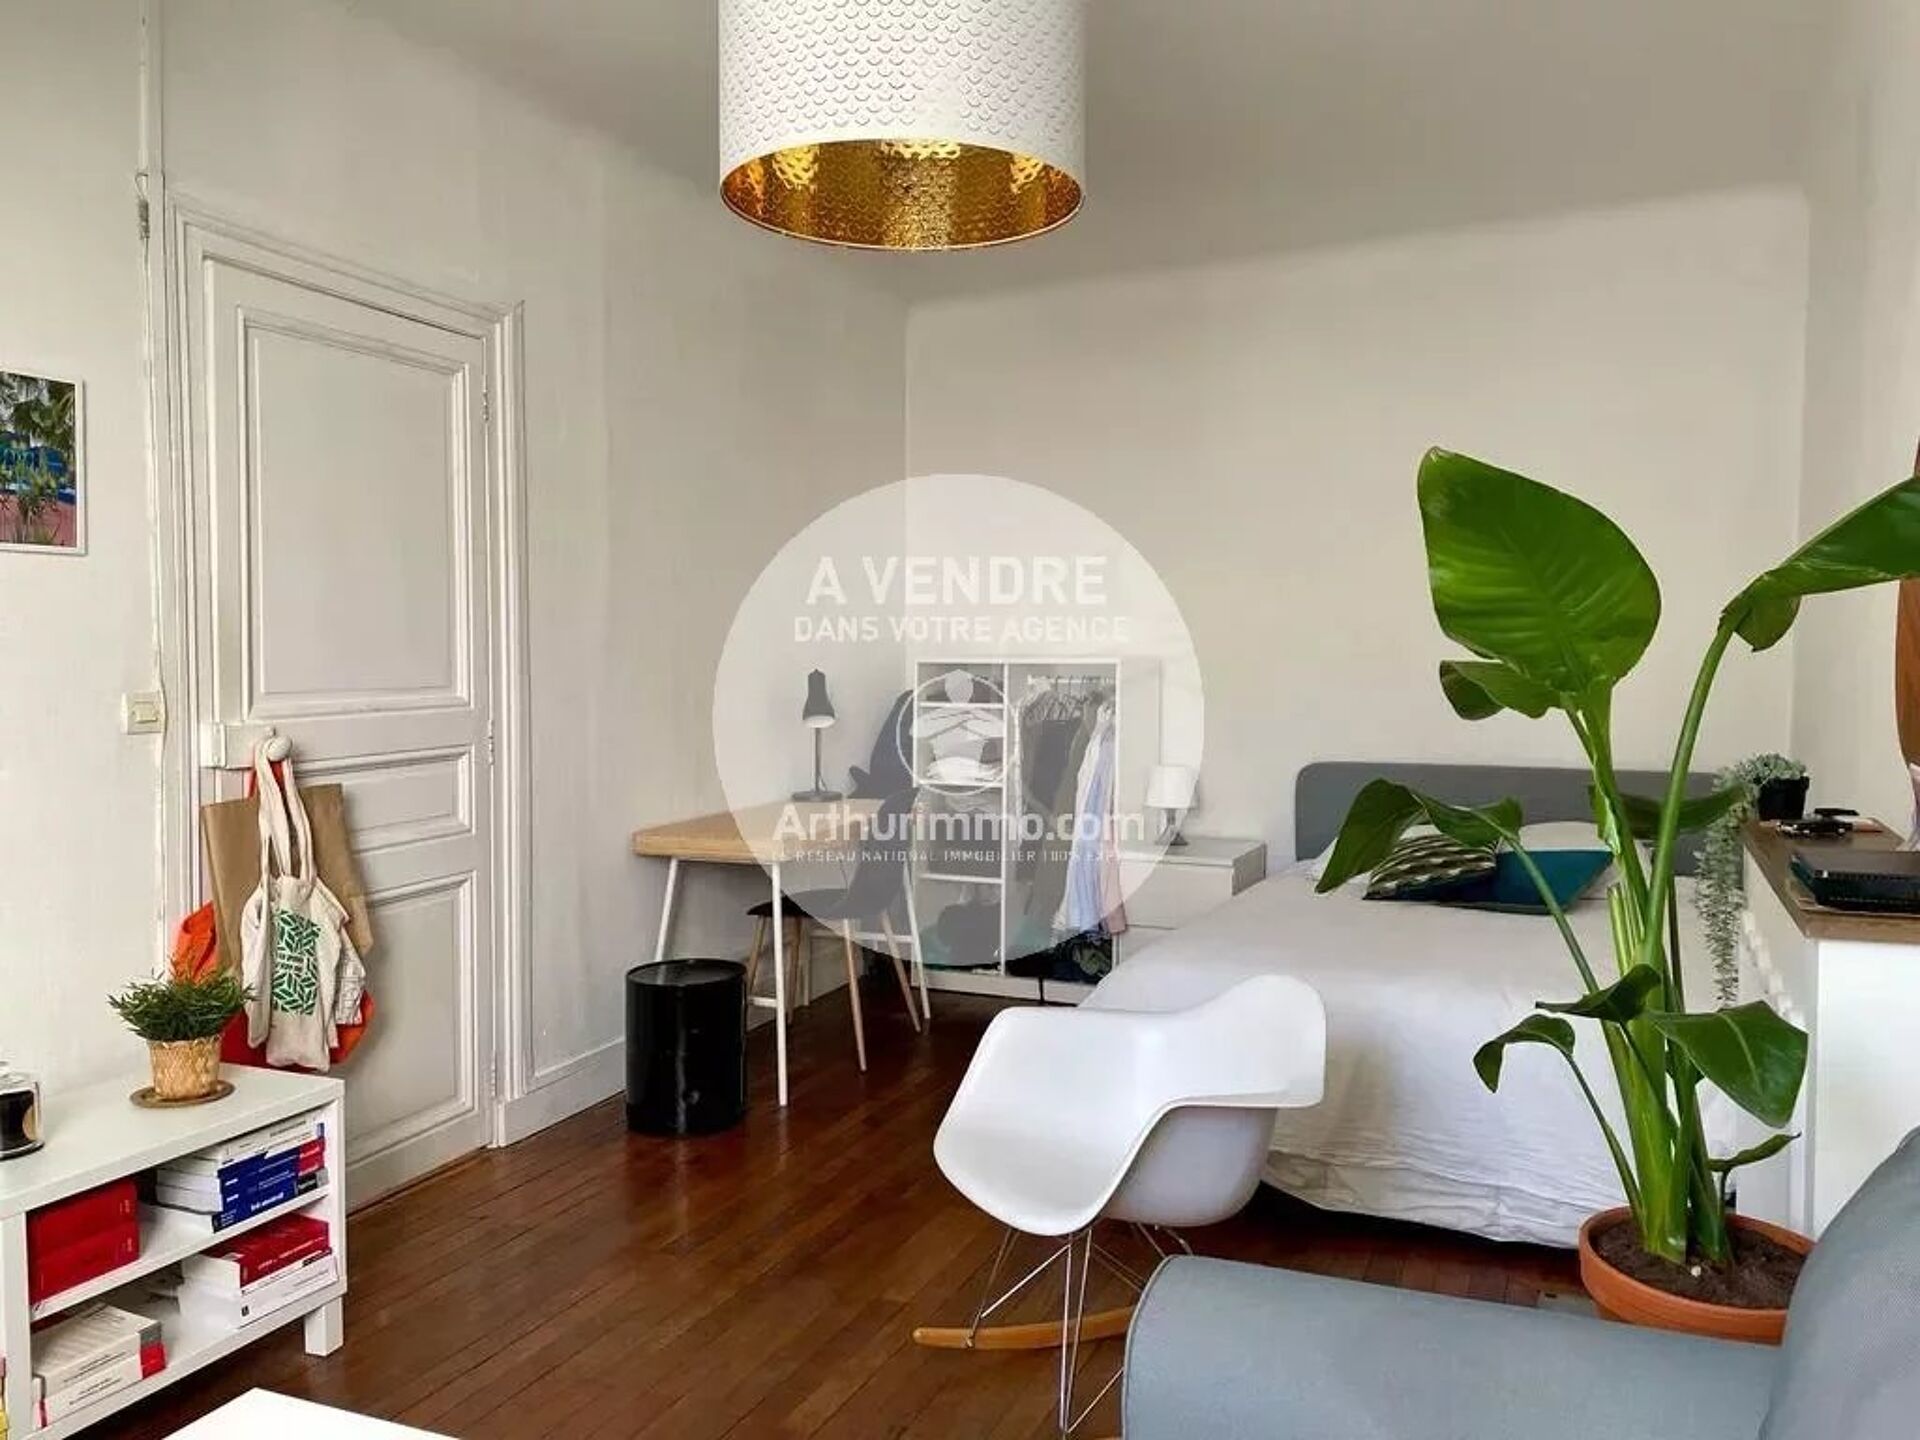 Vente Appartement 29m² 1 Pièce à Nantes (44000) - Arthurimmo